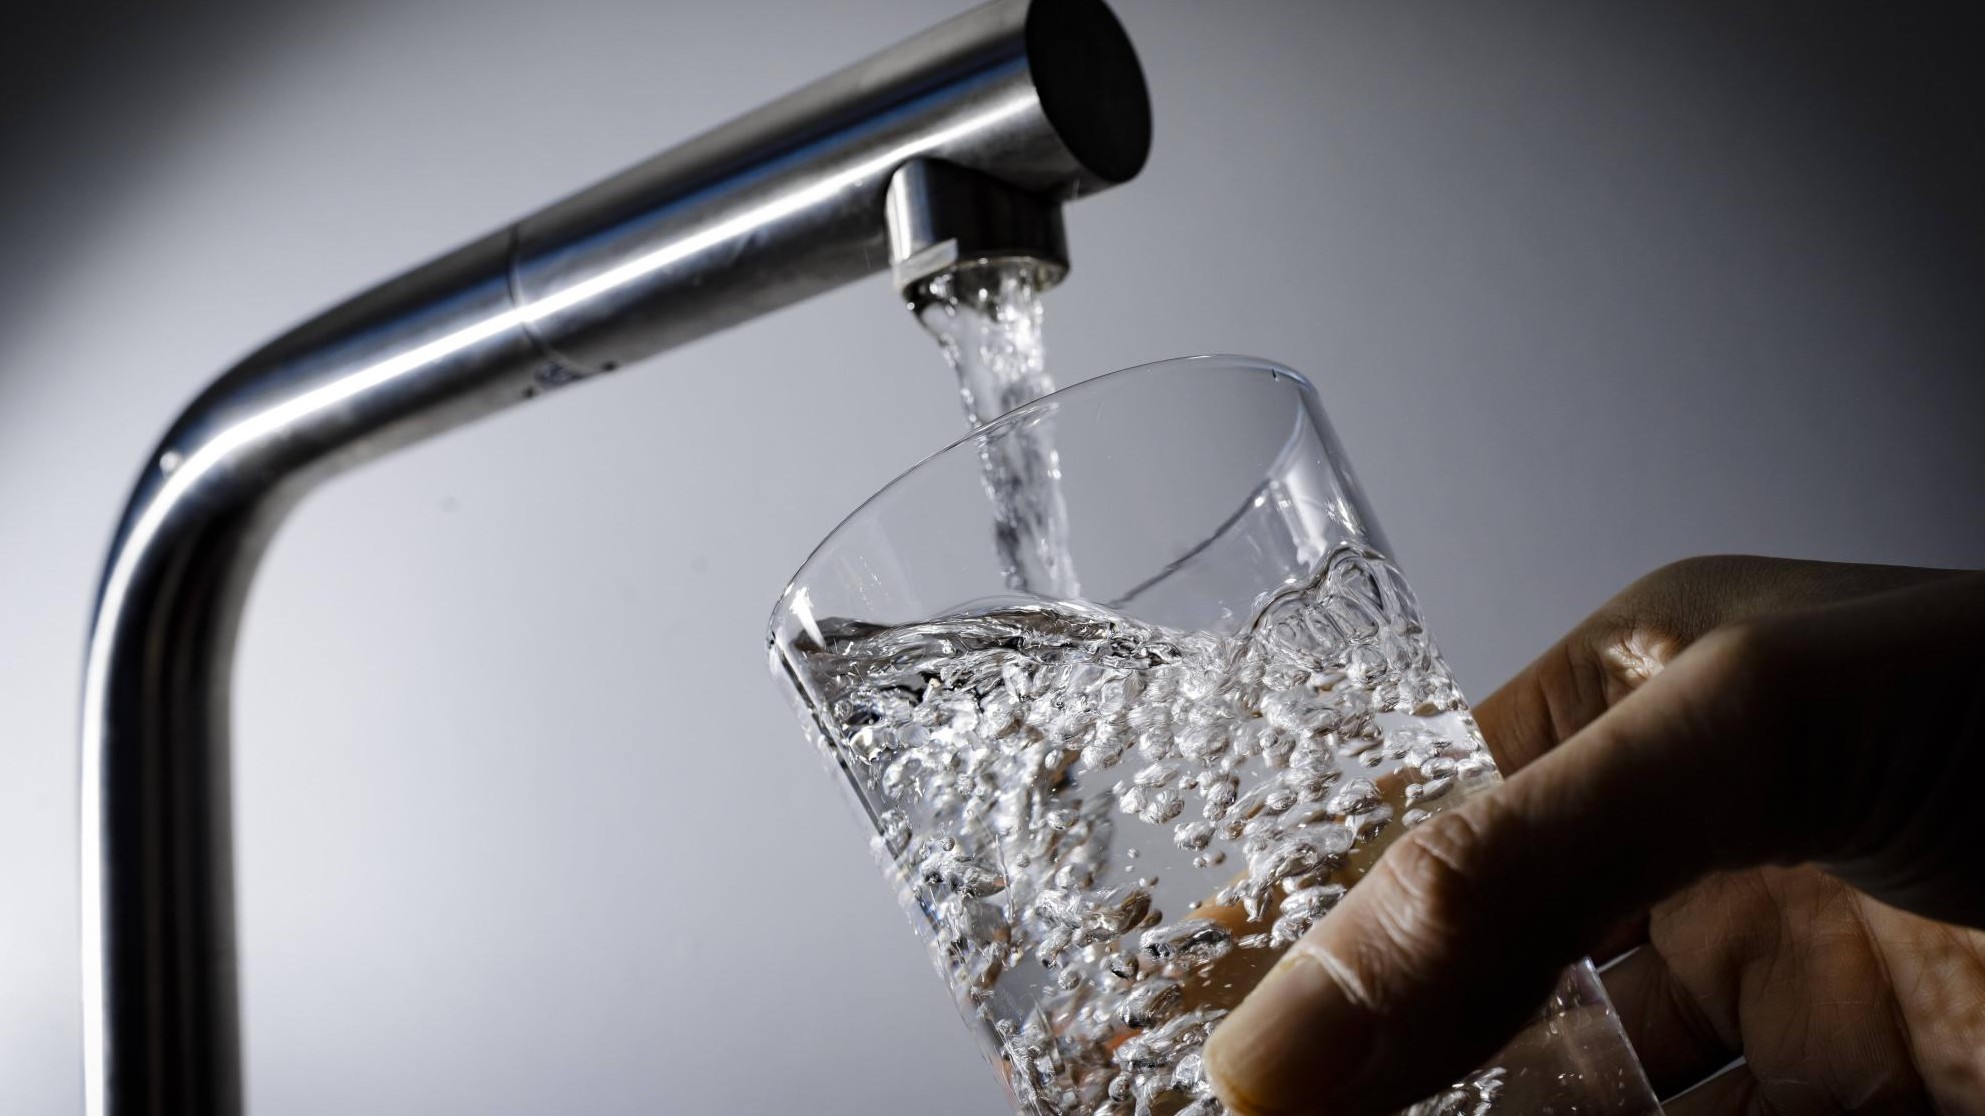 Neue Grenzwerte für Schadstoffe - Trinkwasser in Europa soll sauberer werden